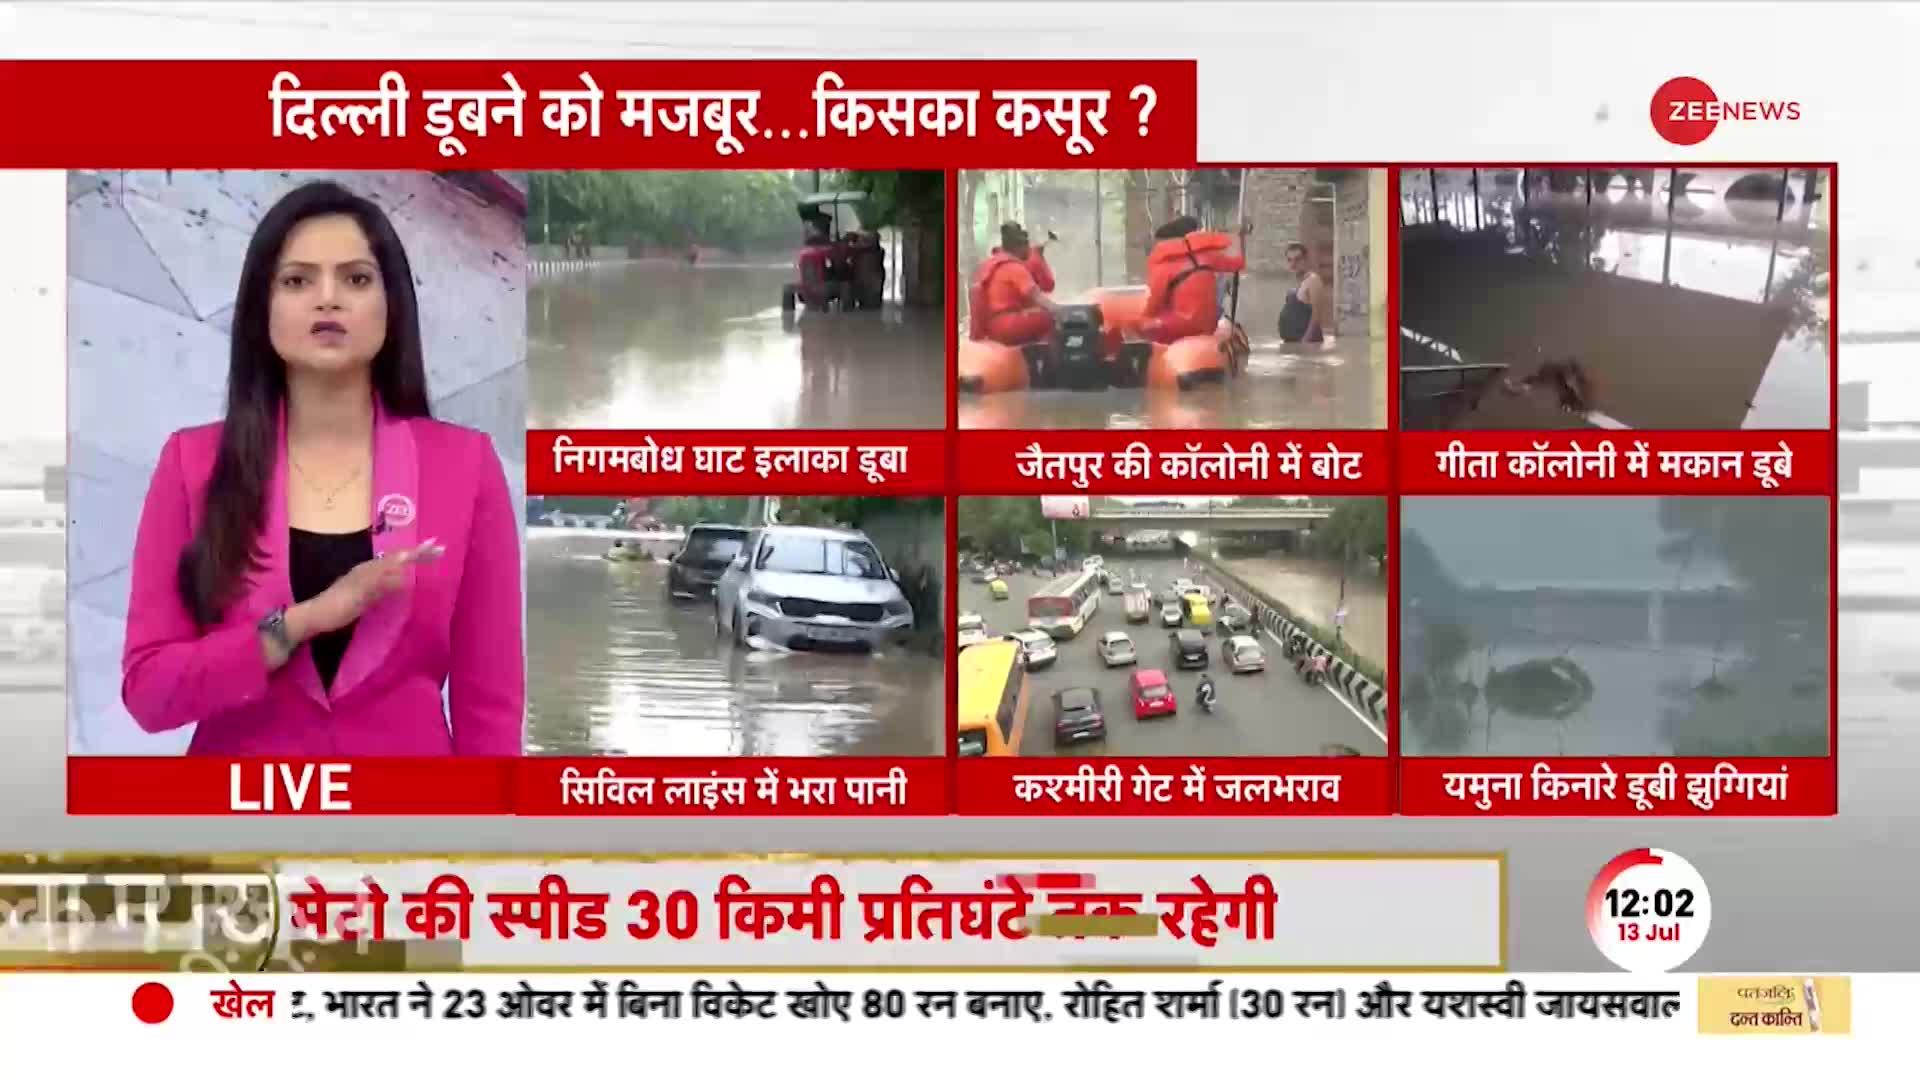 Delhi flood LIVE: आंखों के सामने डूबते घर, दहशत में लोग! चारों तरफ पानी ही पानी..